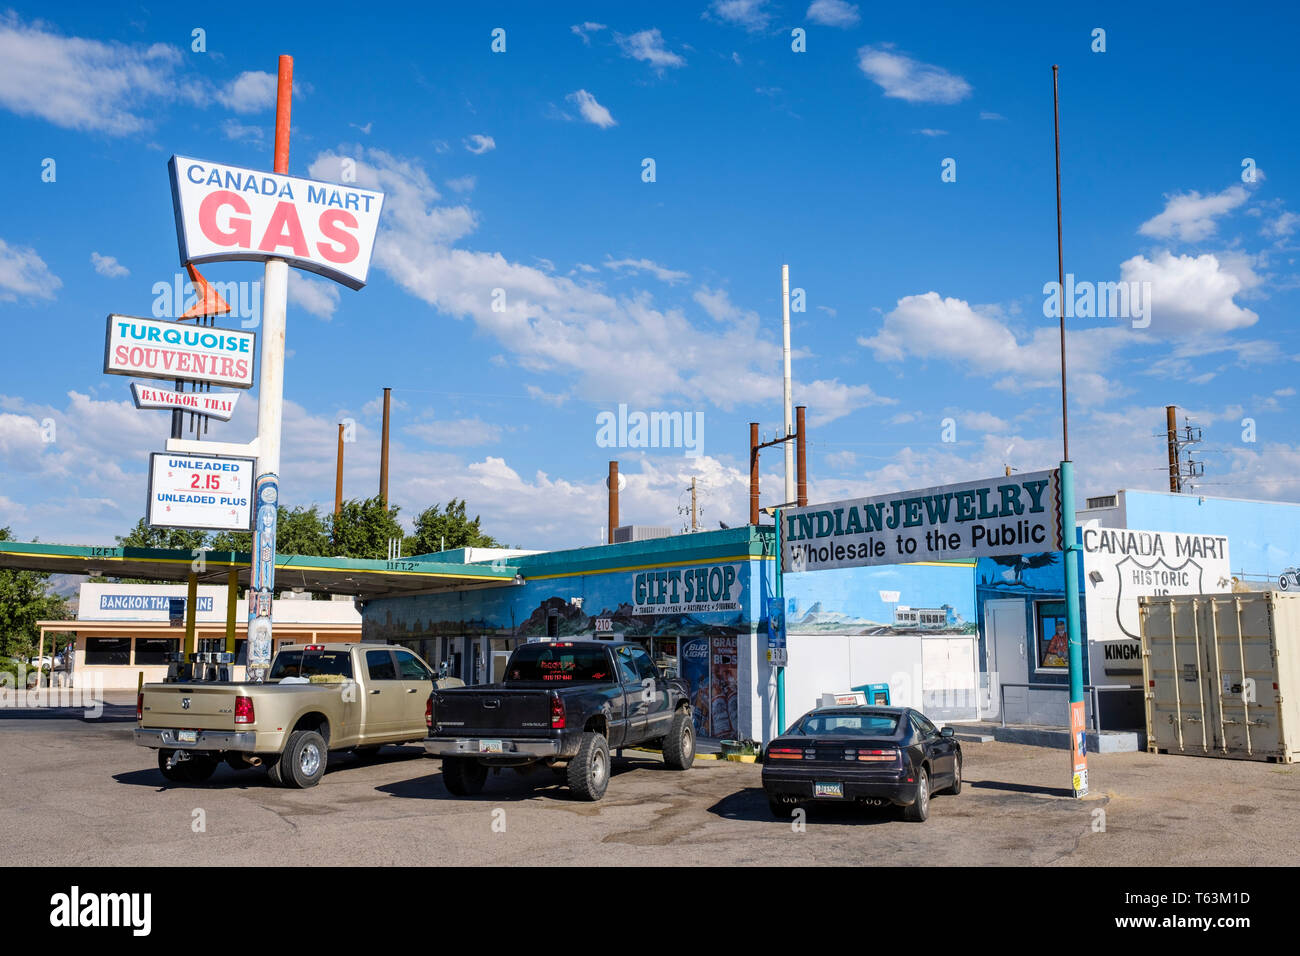 Mart Canada Station d'essence et cadeaux sur les lieux historiques de la vieille Route 66 dans la région de Kingman, Arizona, USA Banque D'Images